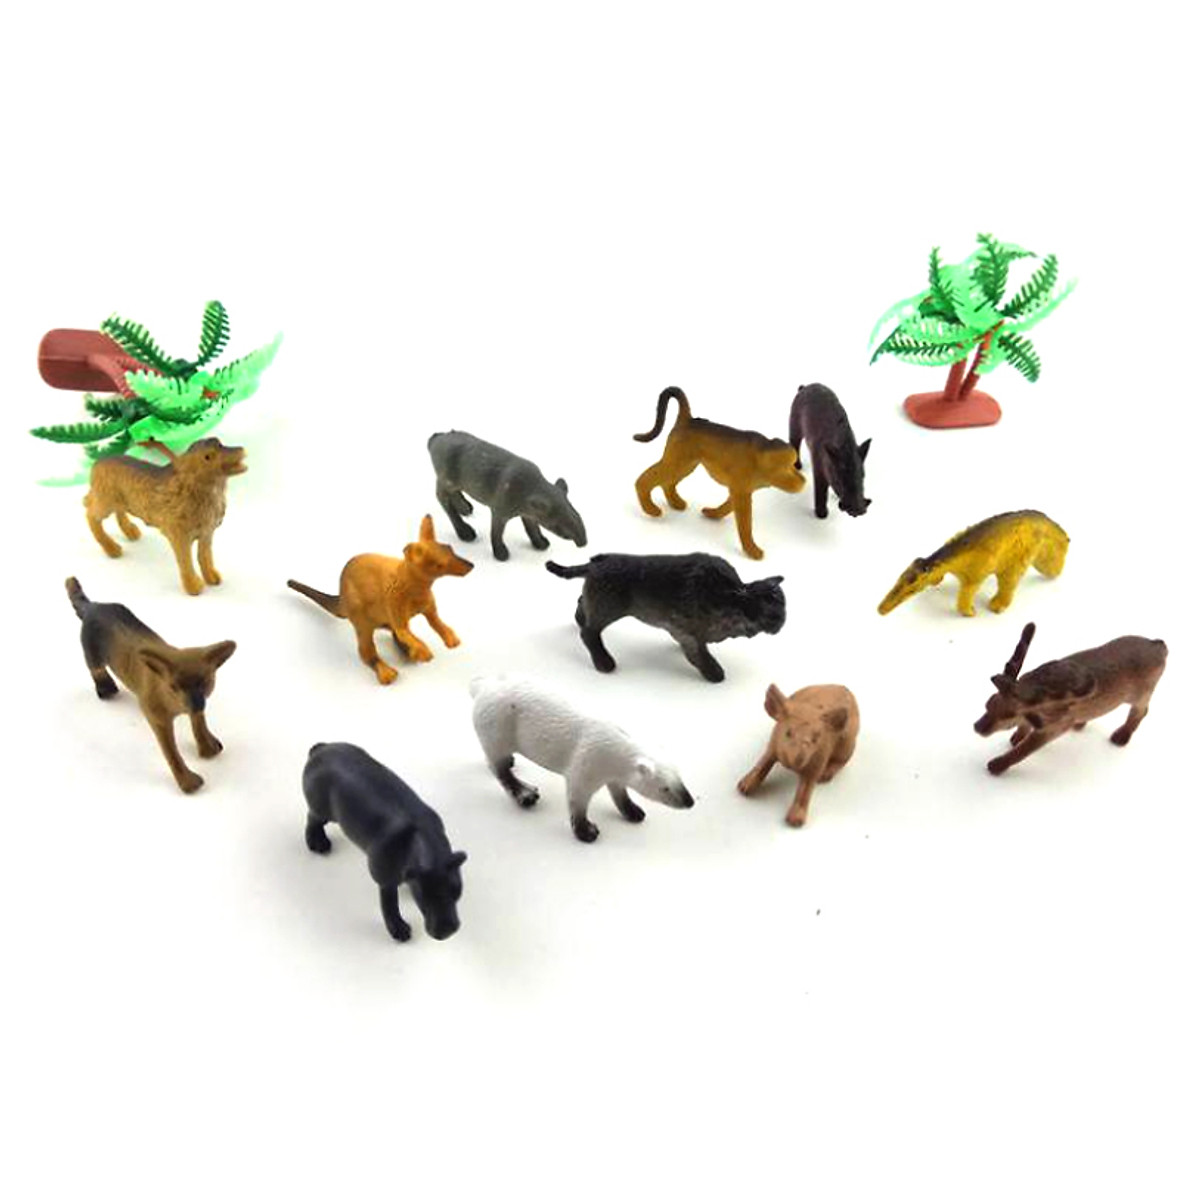 Mua Mô hình đồ chơi hình động vật trong sở thú bằng nhựa  Giao ngẫu nhiên  tại Vacimall